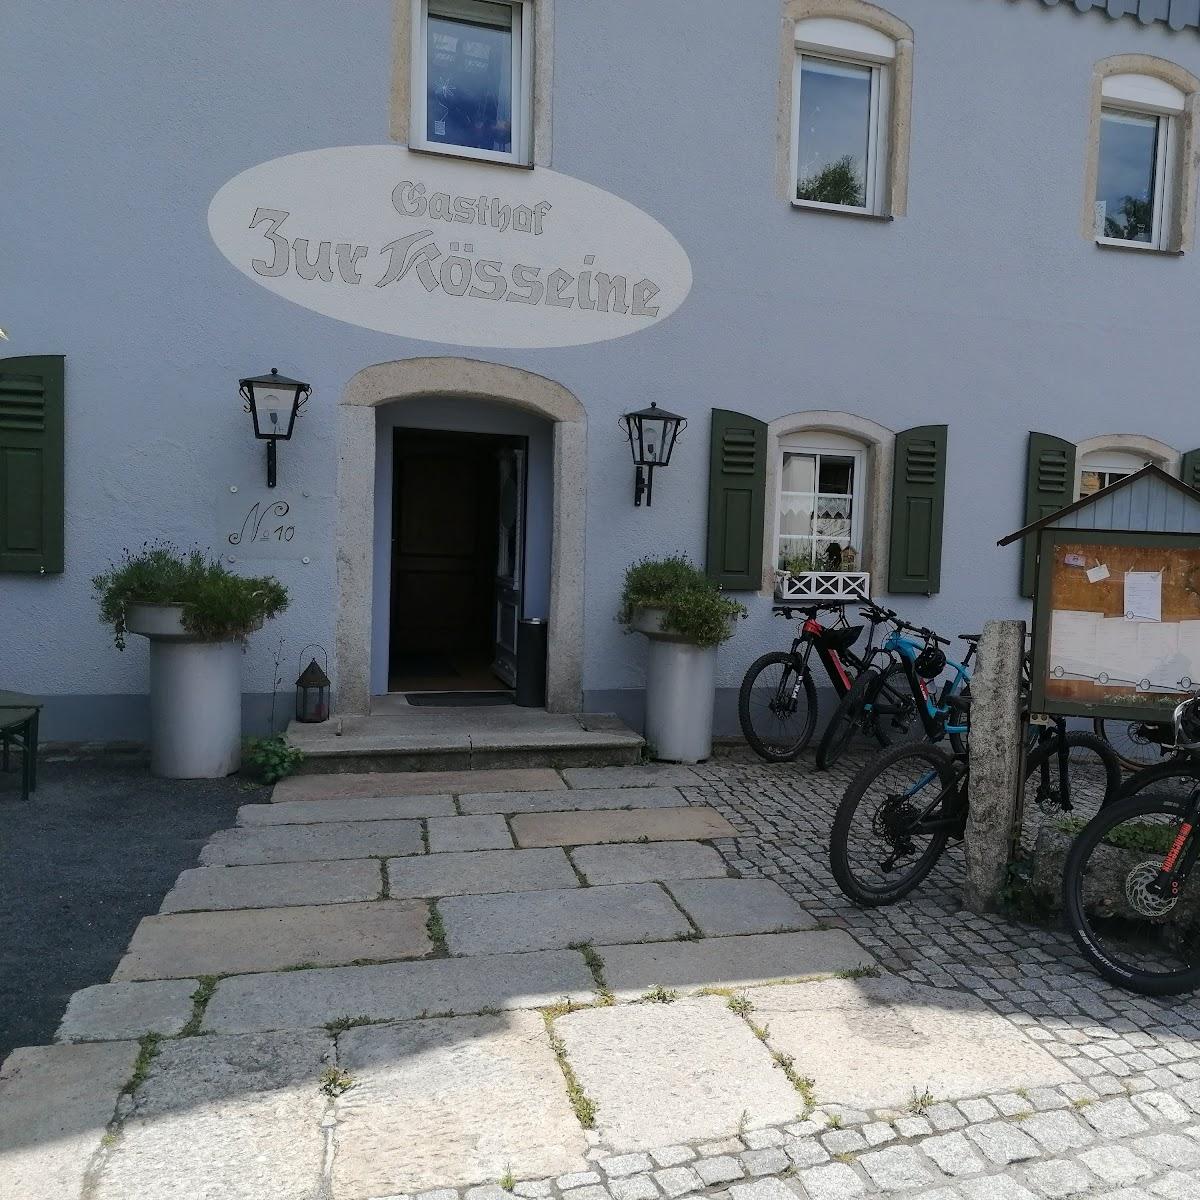 Restaurant "Gasthof  Zur Kösseine " in Nagel